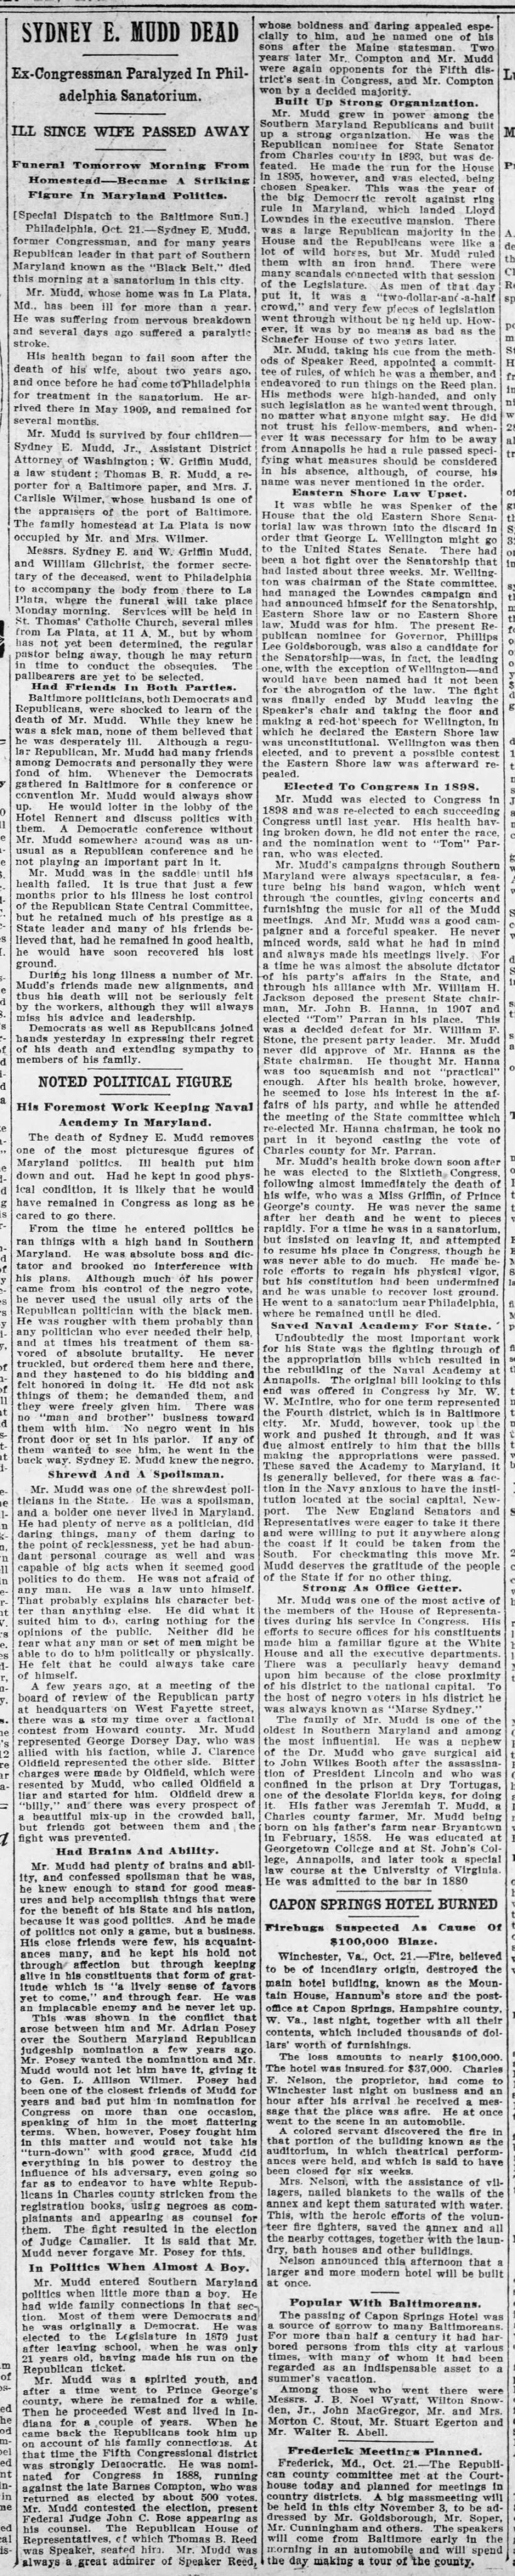 Sydney E. Mudd Dead; 22 Oct 1911; The Baltimore Sun; 10